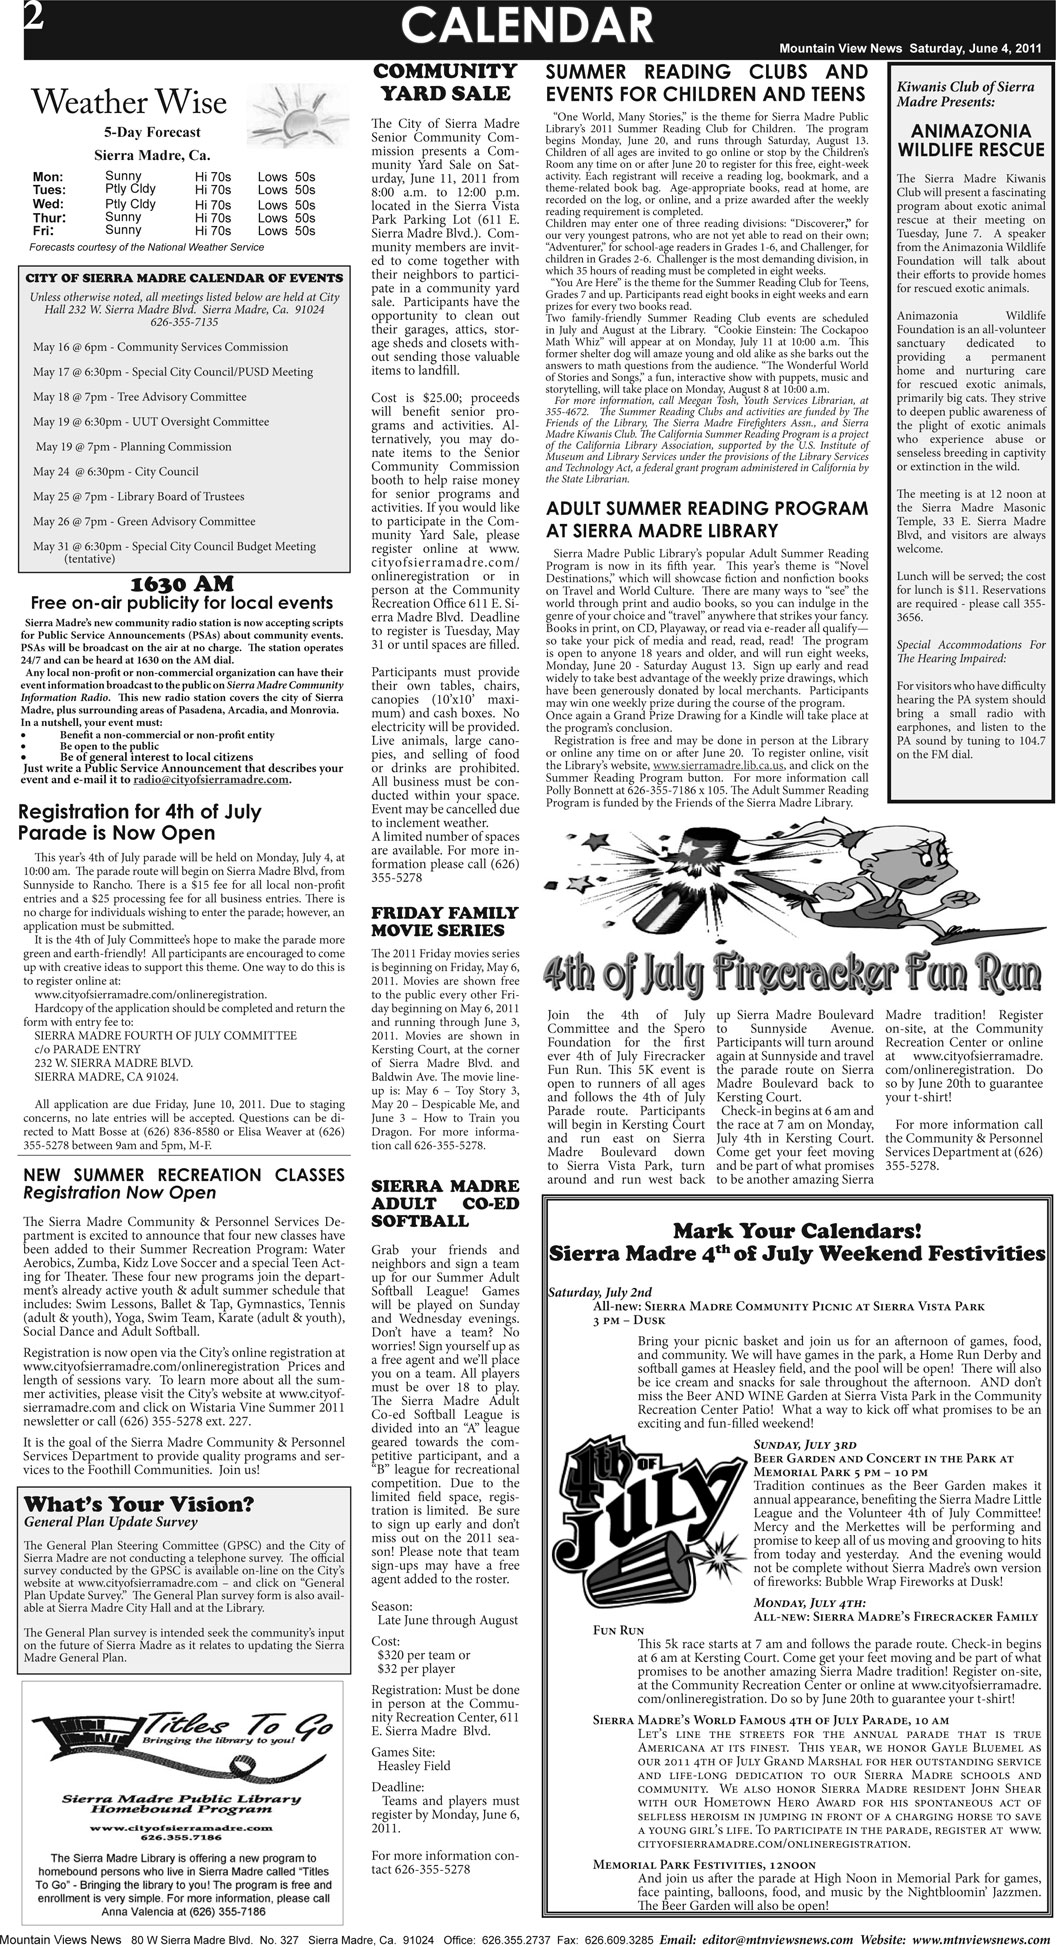 MVNews this week:  Page 2